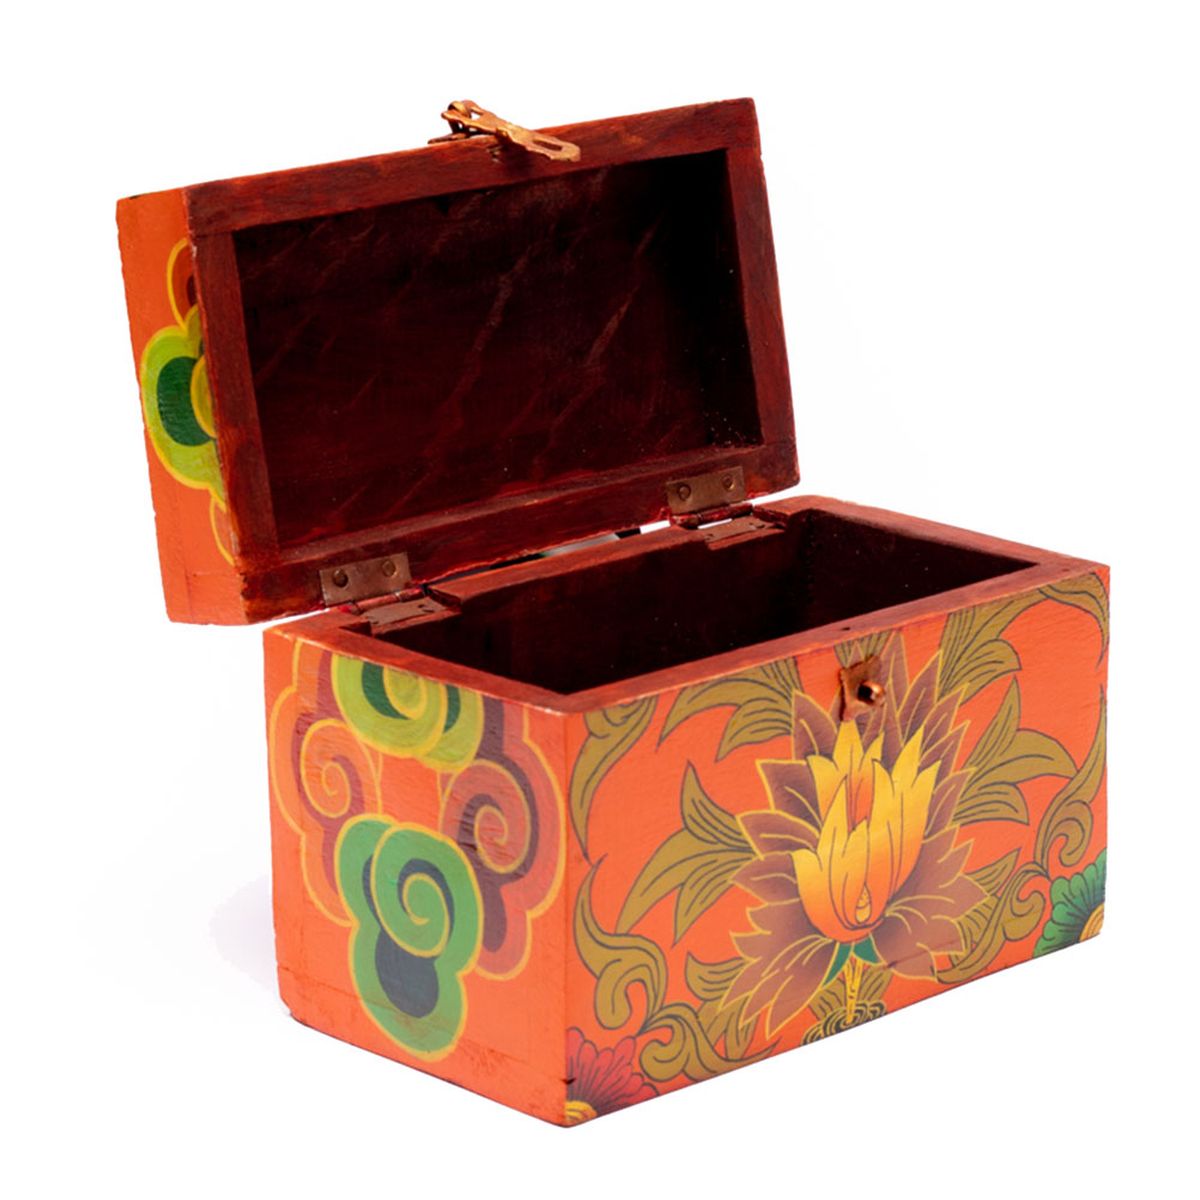 Tibetan treasure box hand painted flowers